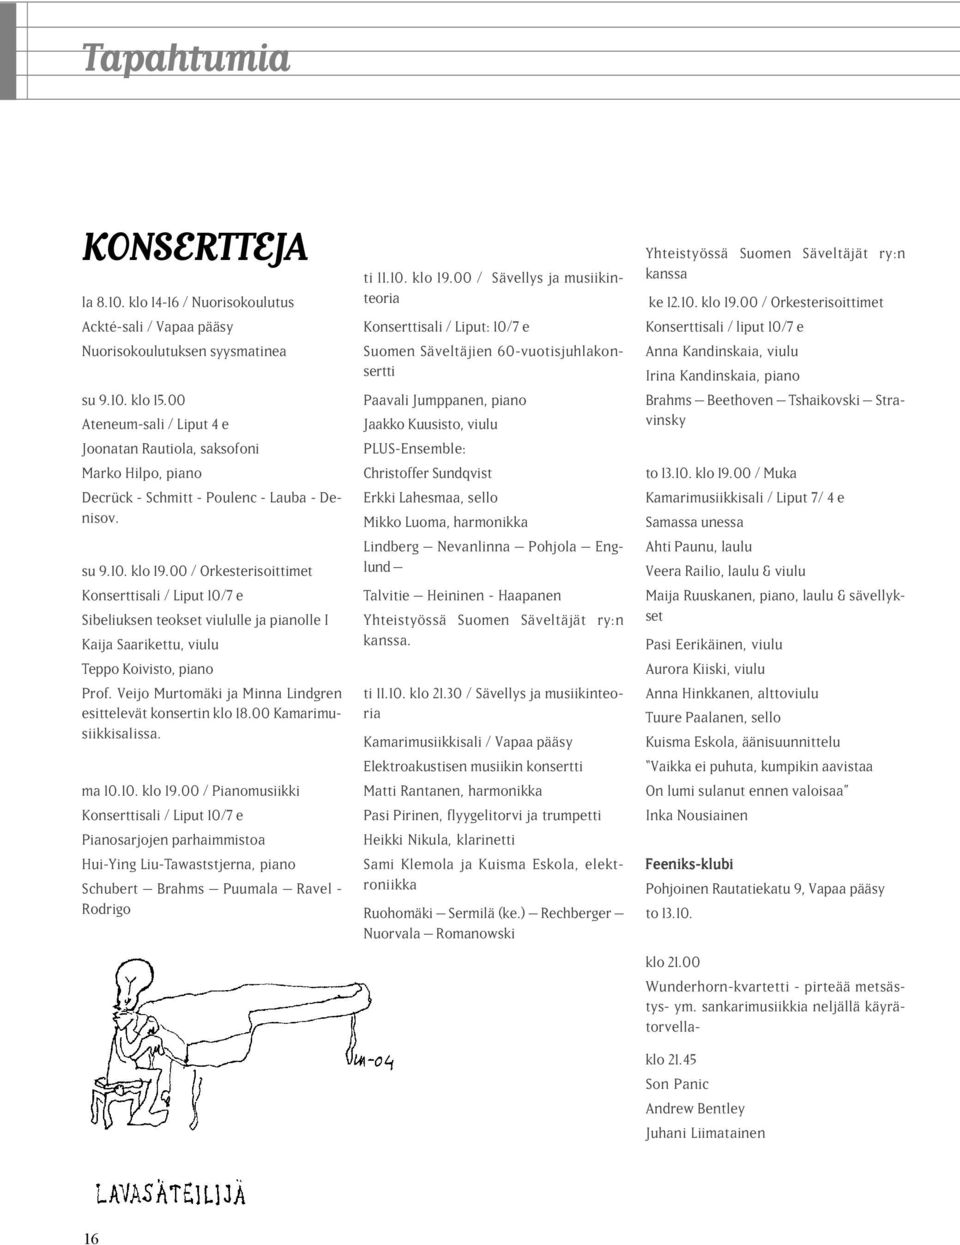 00 / Orkesterisoittimet Konserttisali / Liput 10/7 e Sibeliuksen teokset viululle ja pianolle I Kaija Saarikettu, viulu Teppo Koivisto, piano Prof.